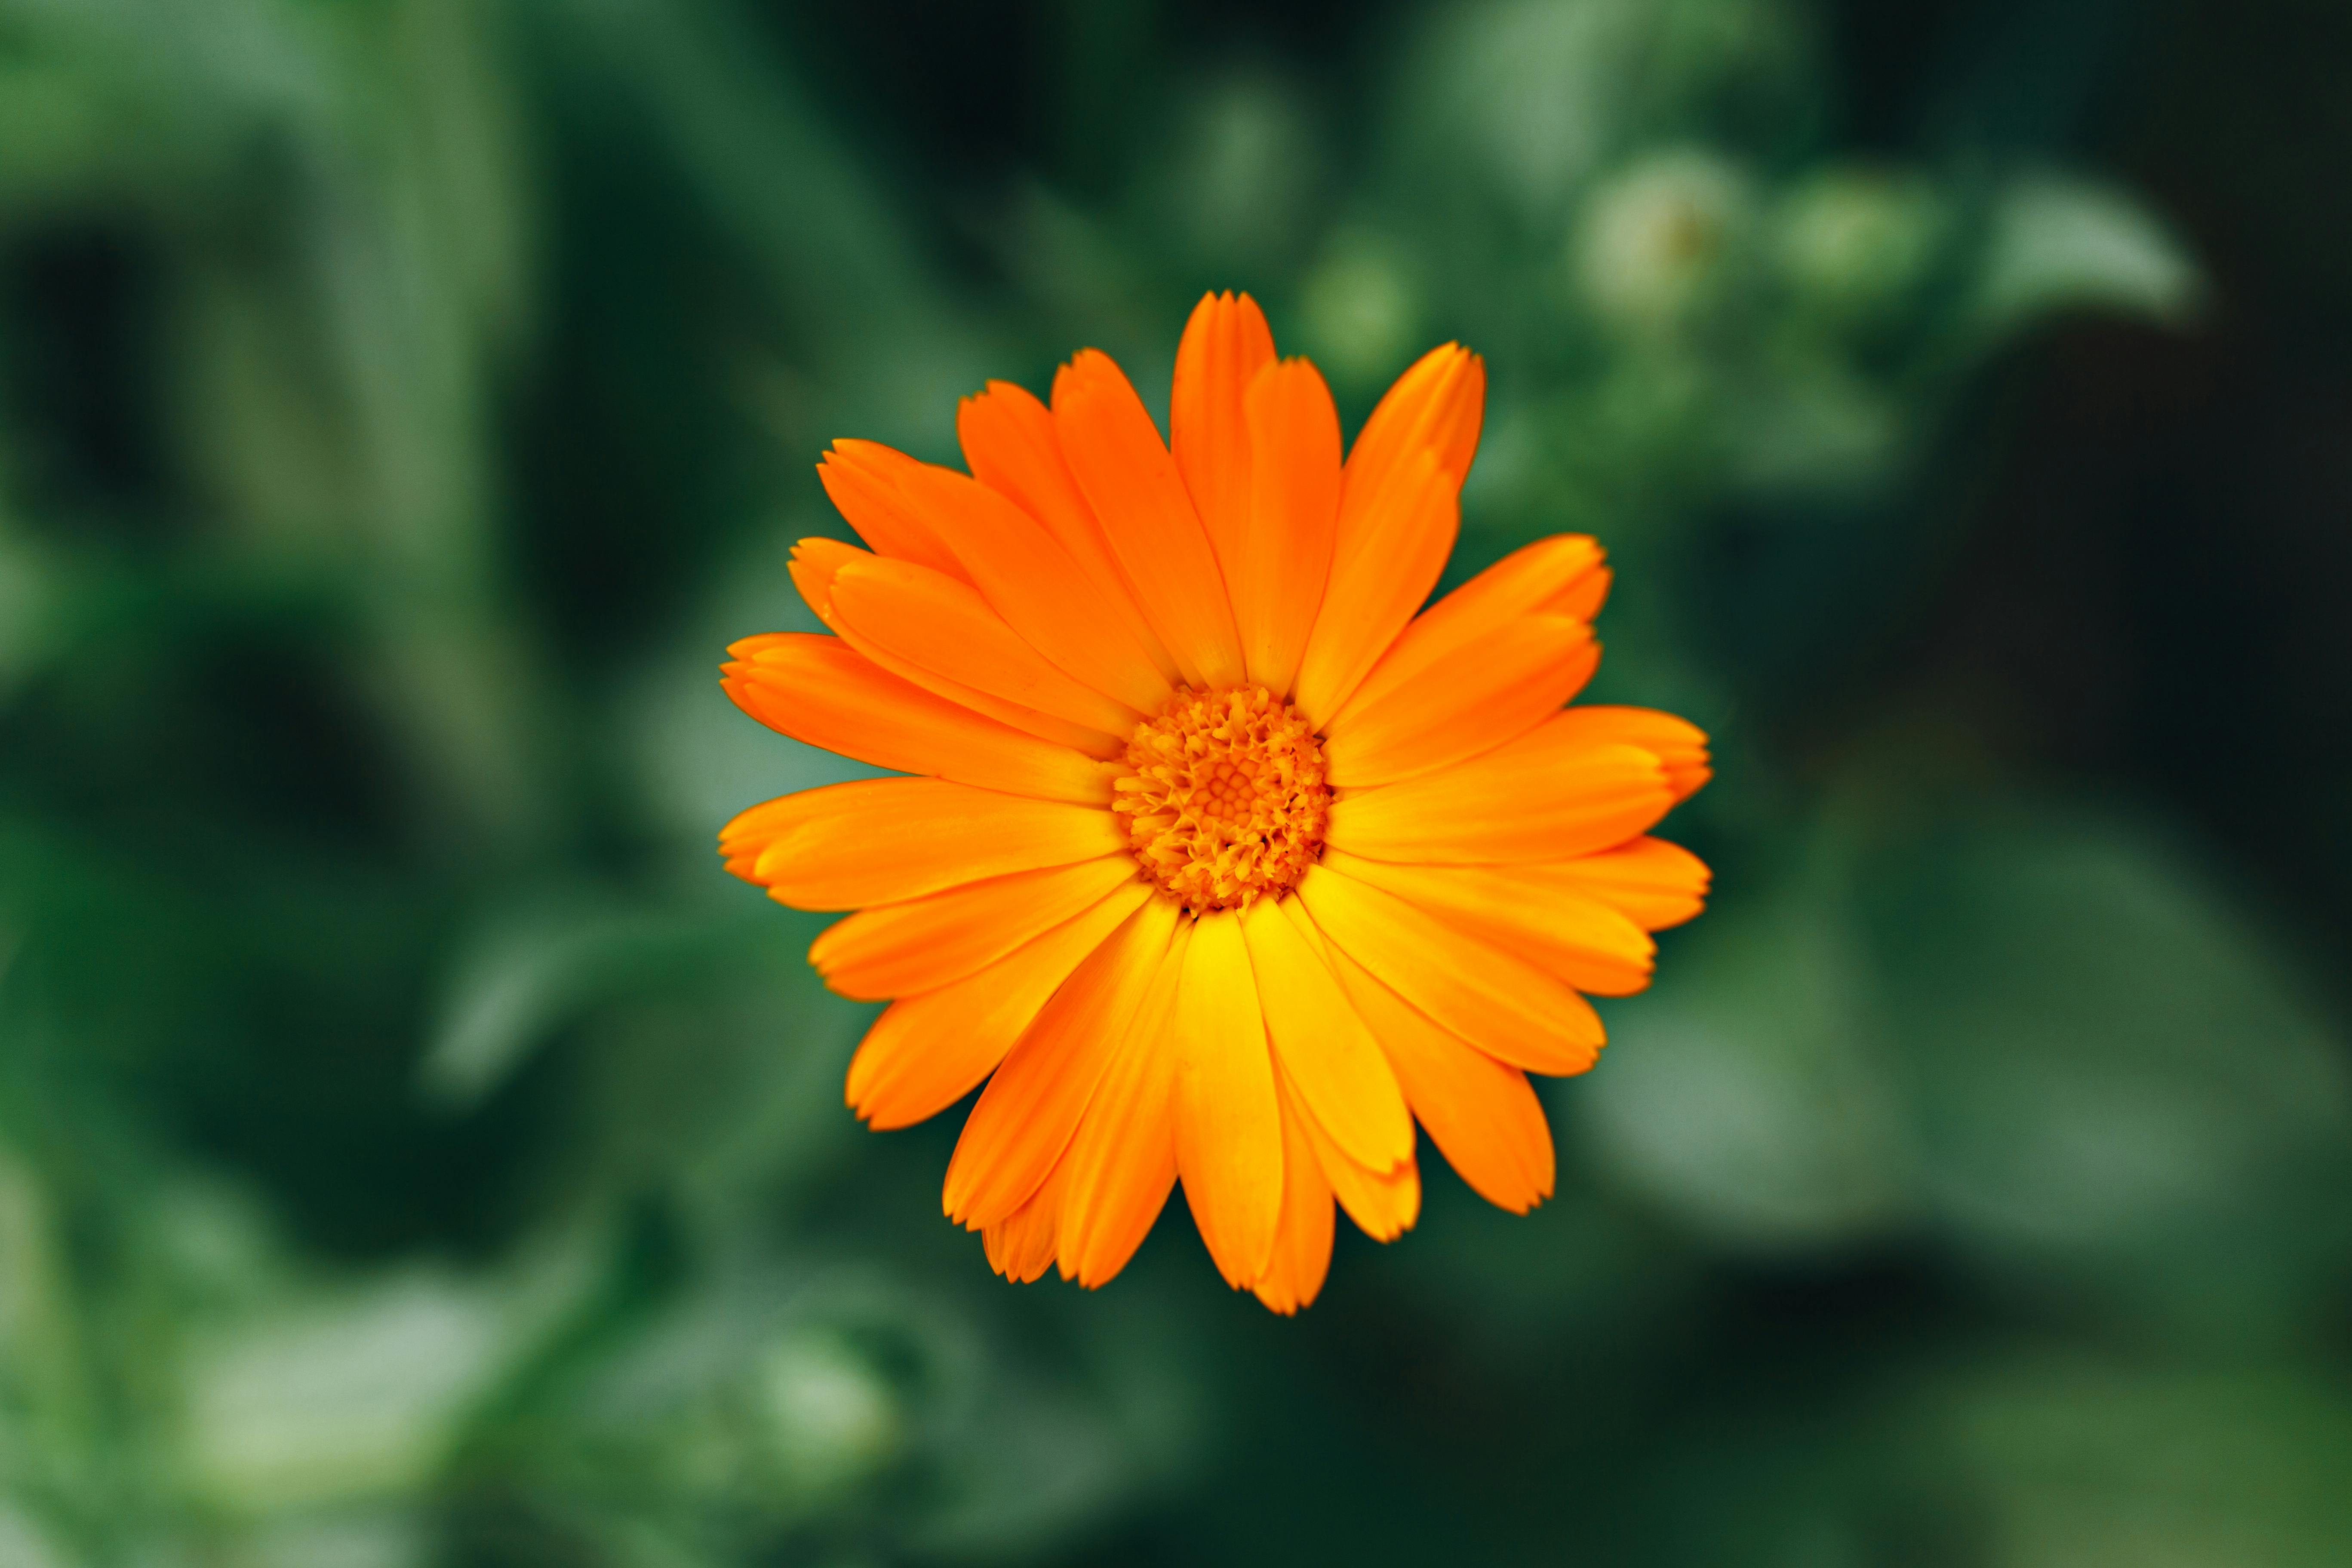 Orange Flowers on Flower Field · Free Stock Photo